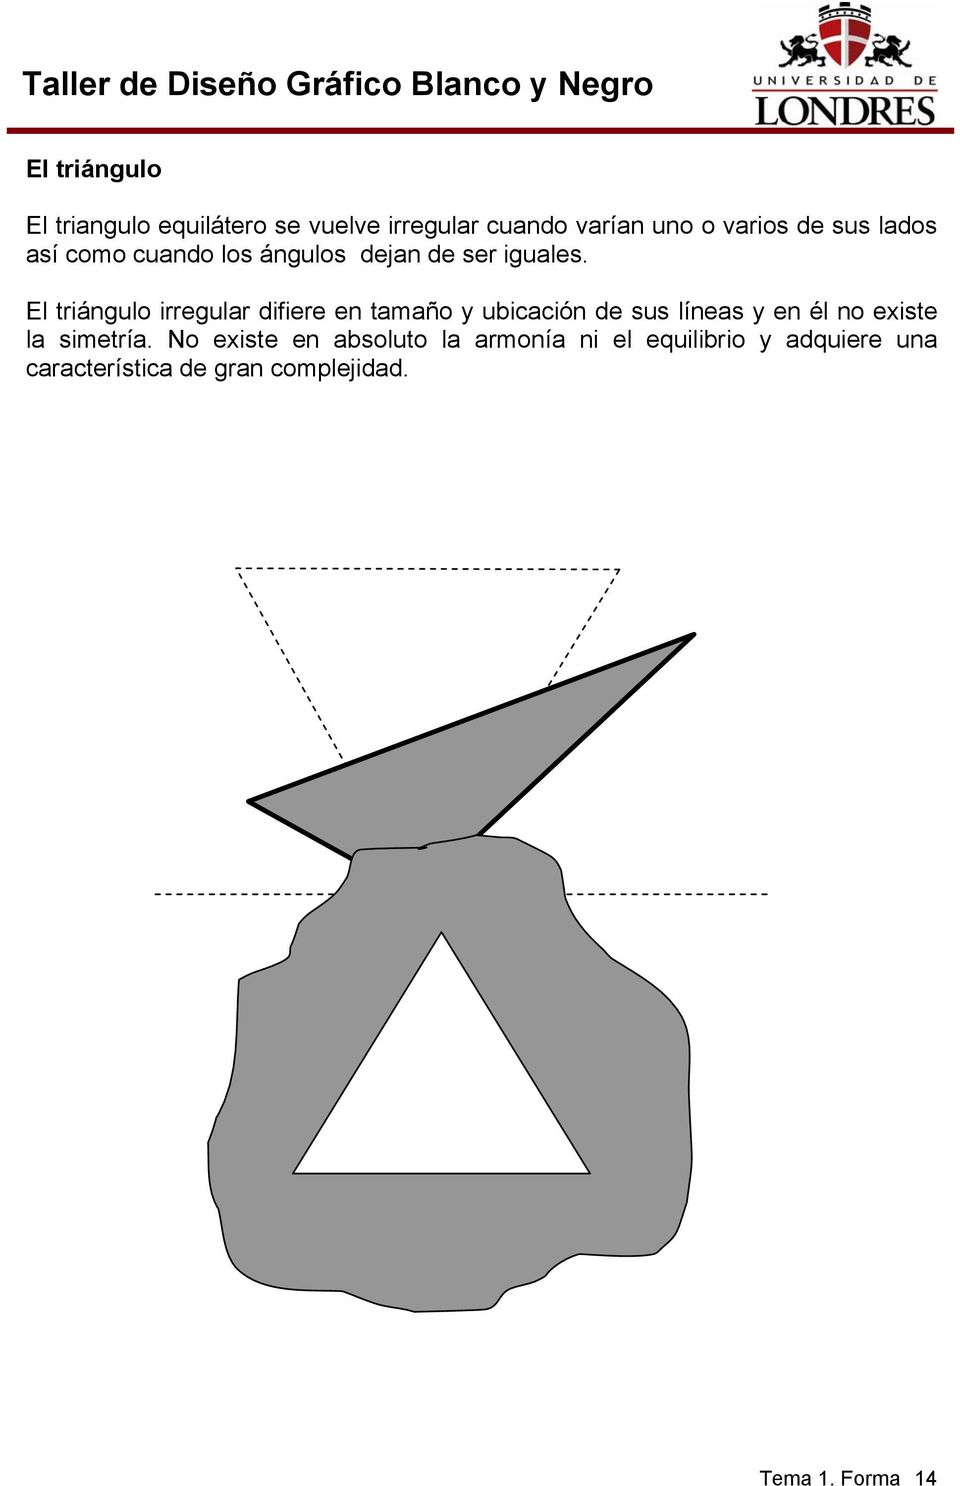 El triángulo irregular difiere en tamaño y ubicación de sus líneas y en él no existe la